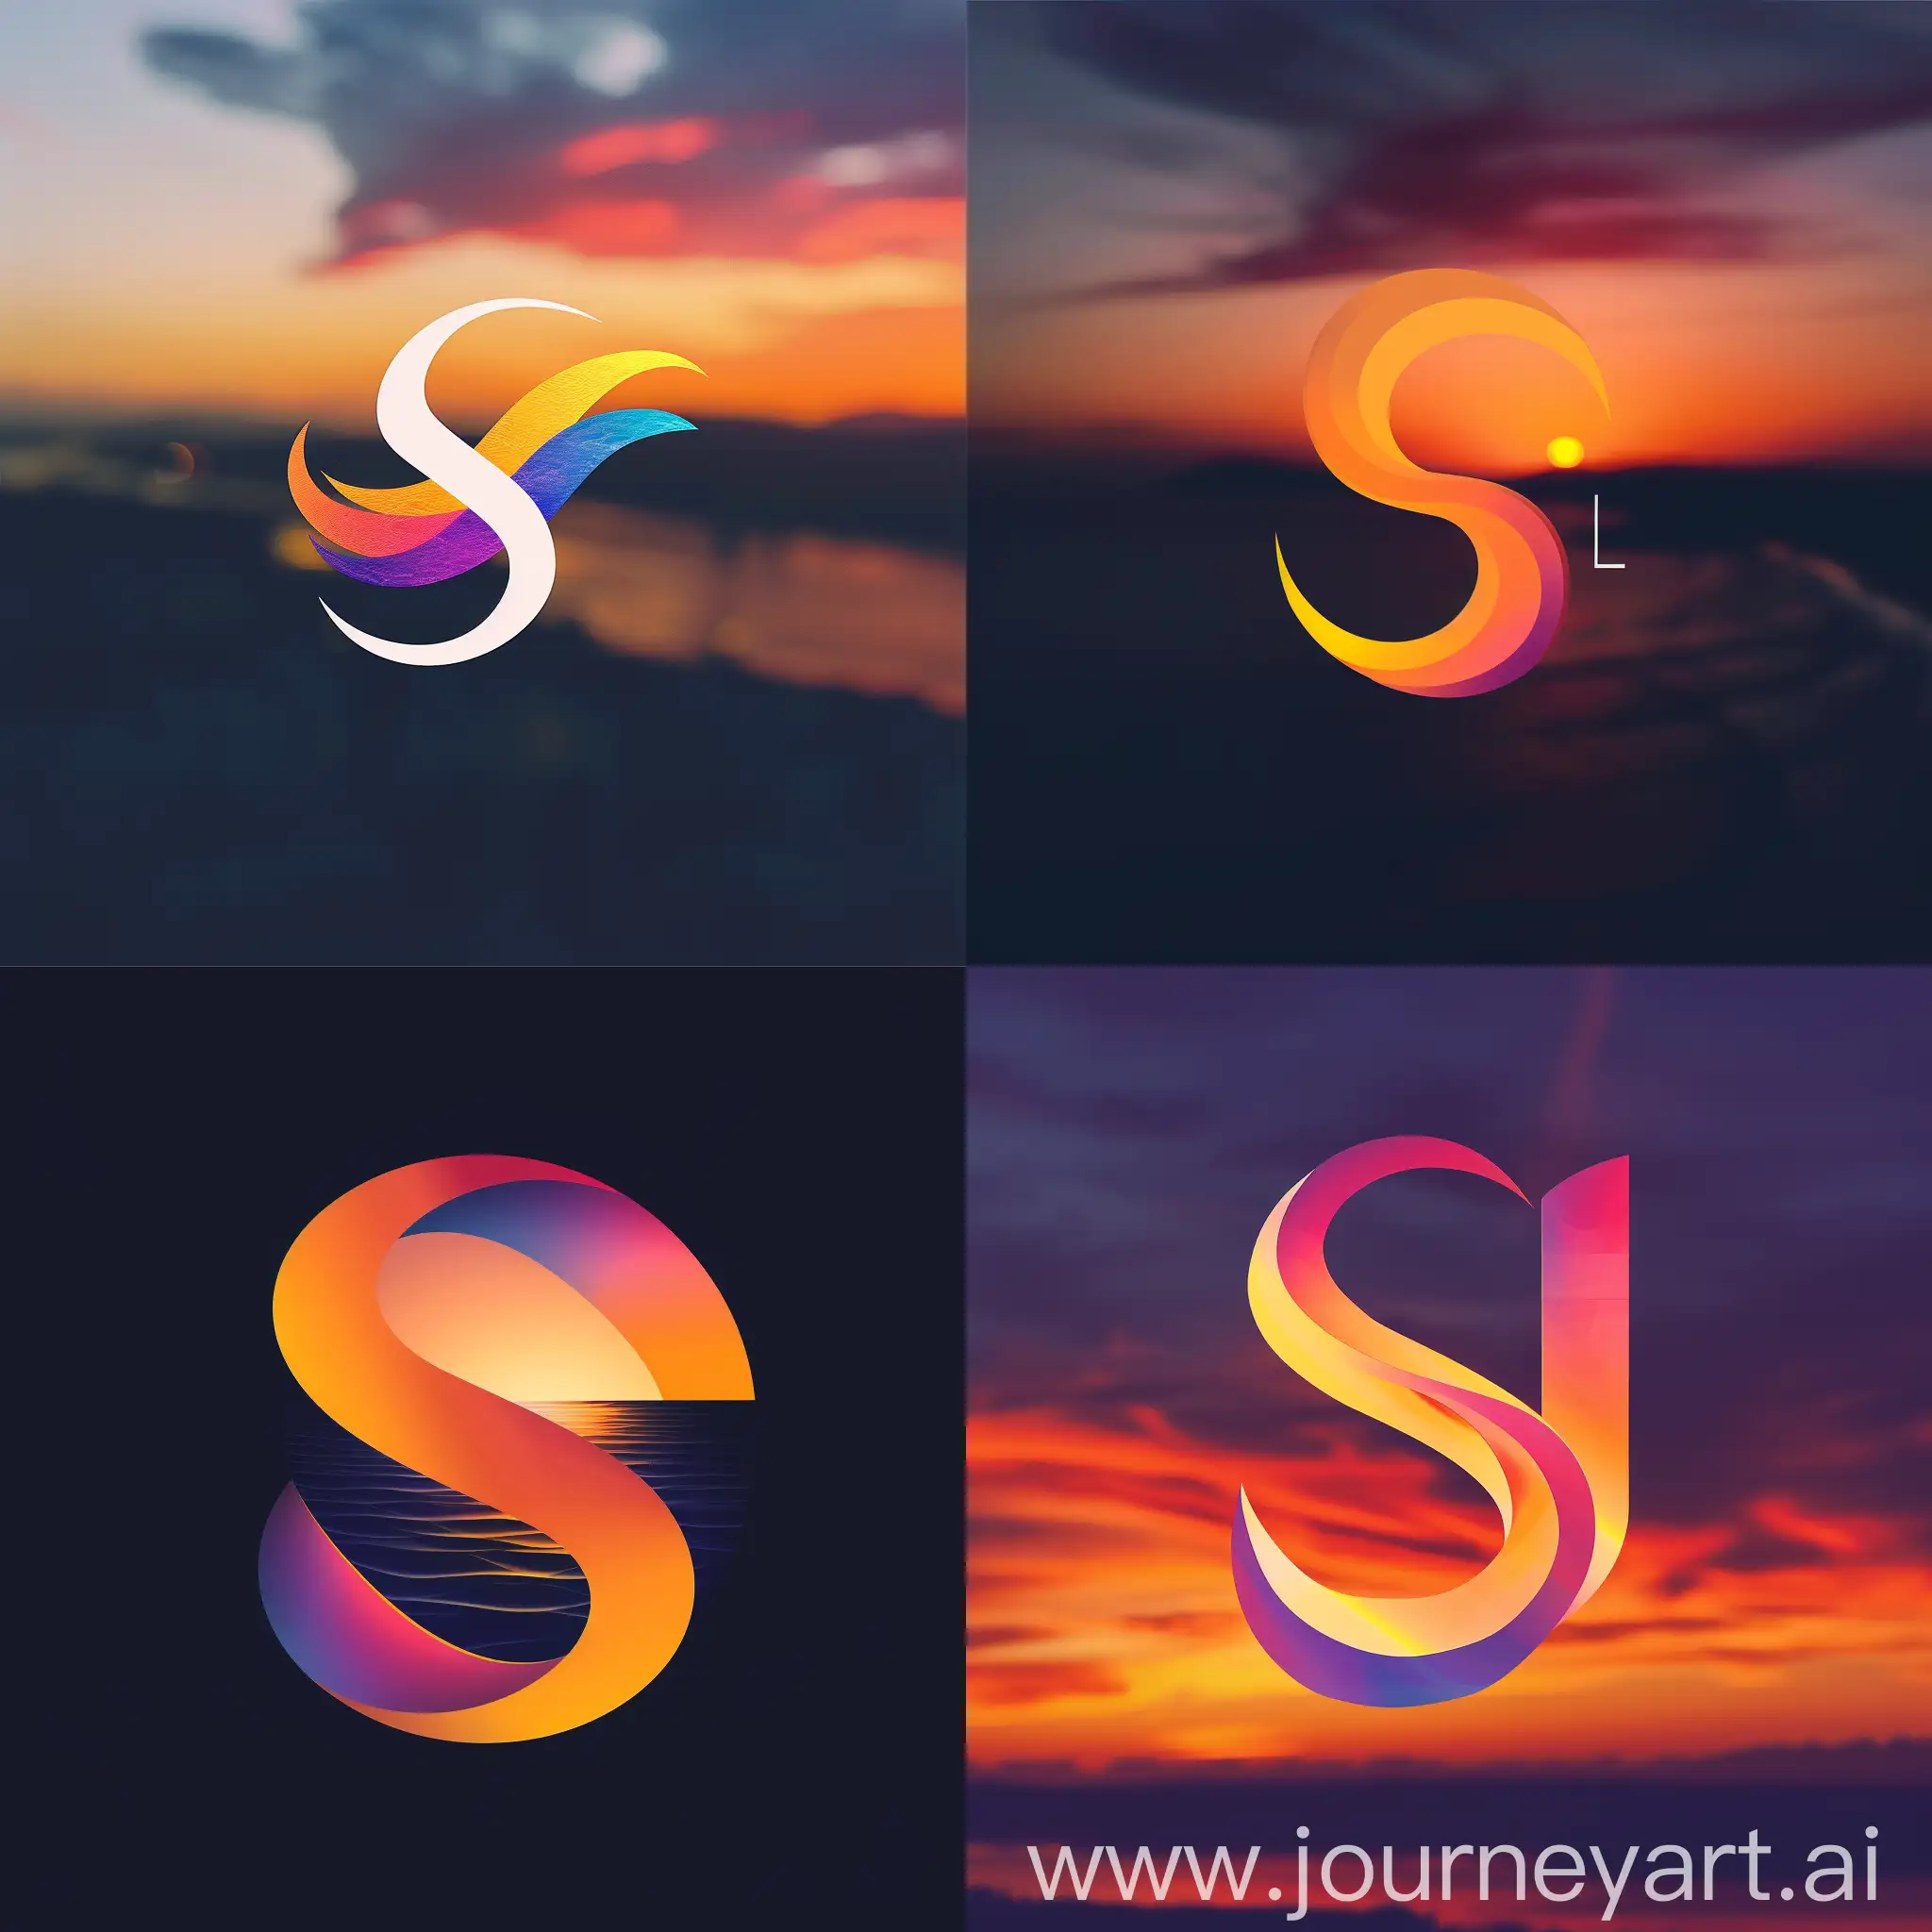 Абстрактный логотип "SL", в виде переливающихся цветов на фоне солнечного заката, символизирующий красоту и эмоции, --s 200